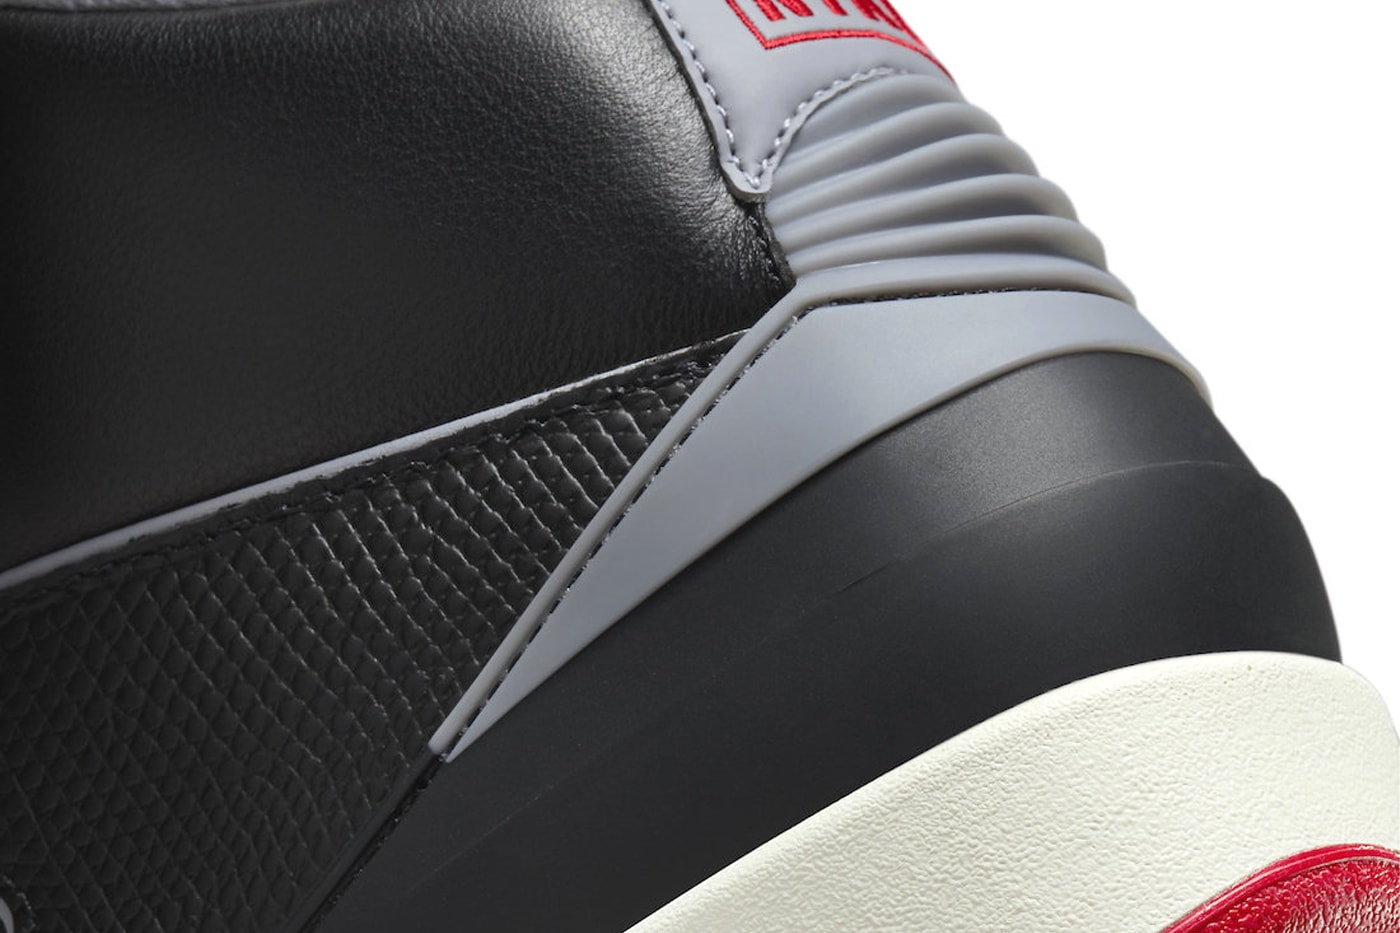 エアジョーダン3の人気OGカラーを纏った新作エアジョーダン2“ブラックセメント”が登場 Air Jordan 2 "Black Cement" Has an Official Release Date DR8884-001 black/Cement Grey-Fire Red-Sail